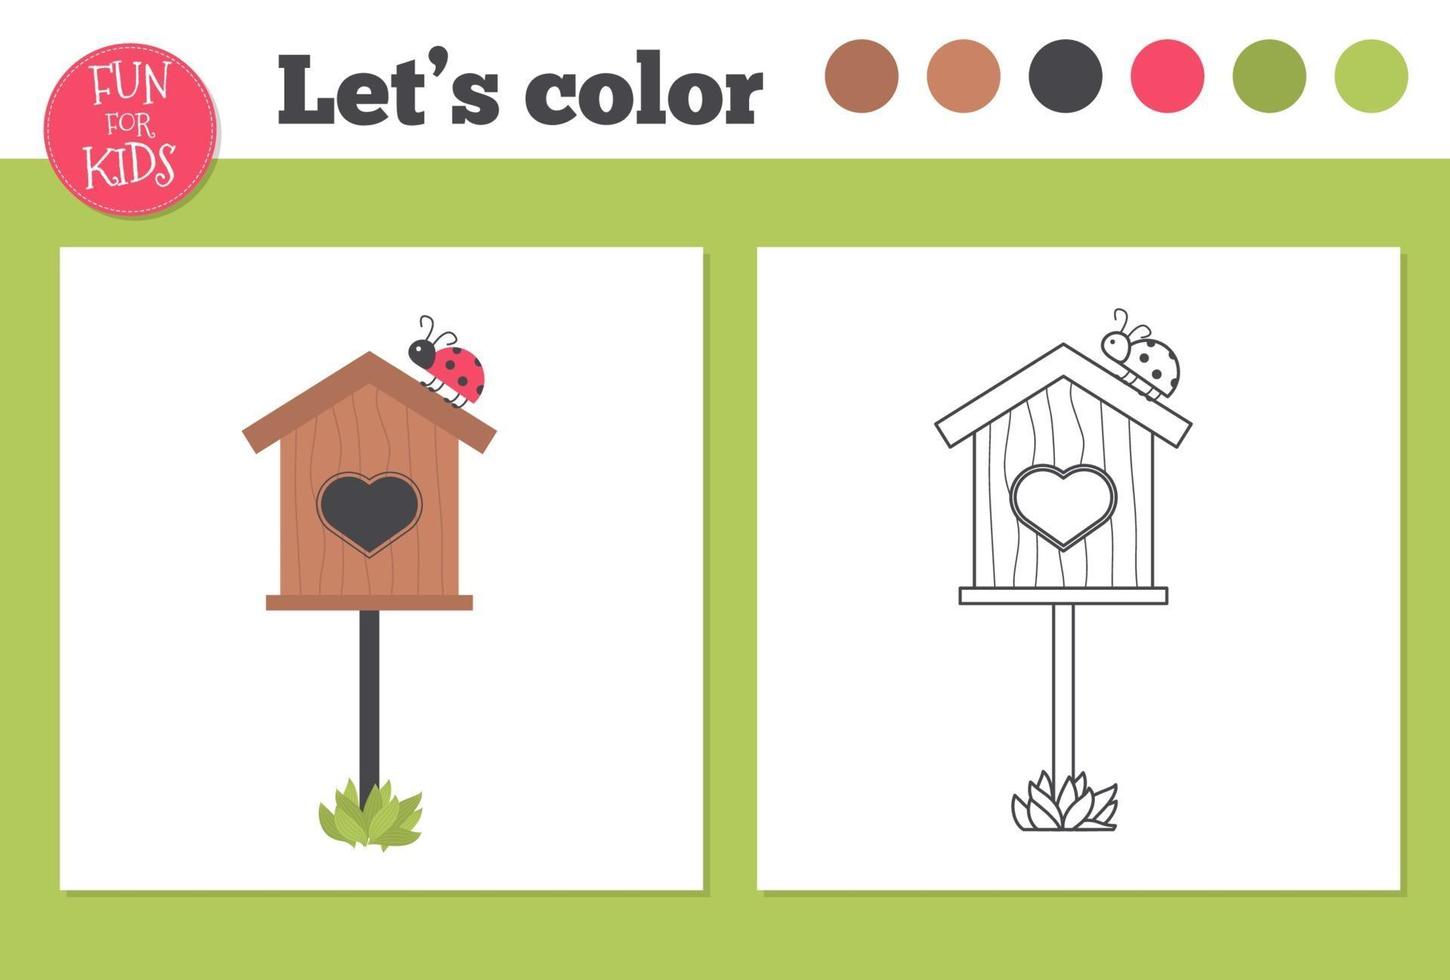 birdhouse livro de colorir para crianças pré-escolares com nível de jogo educacional fácil. vetor